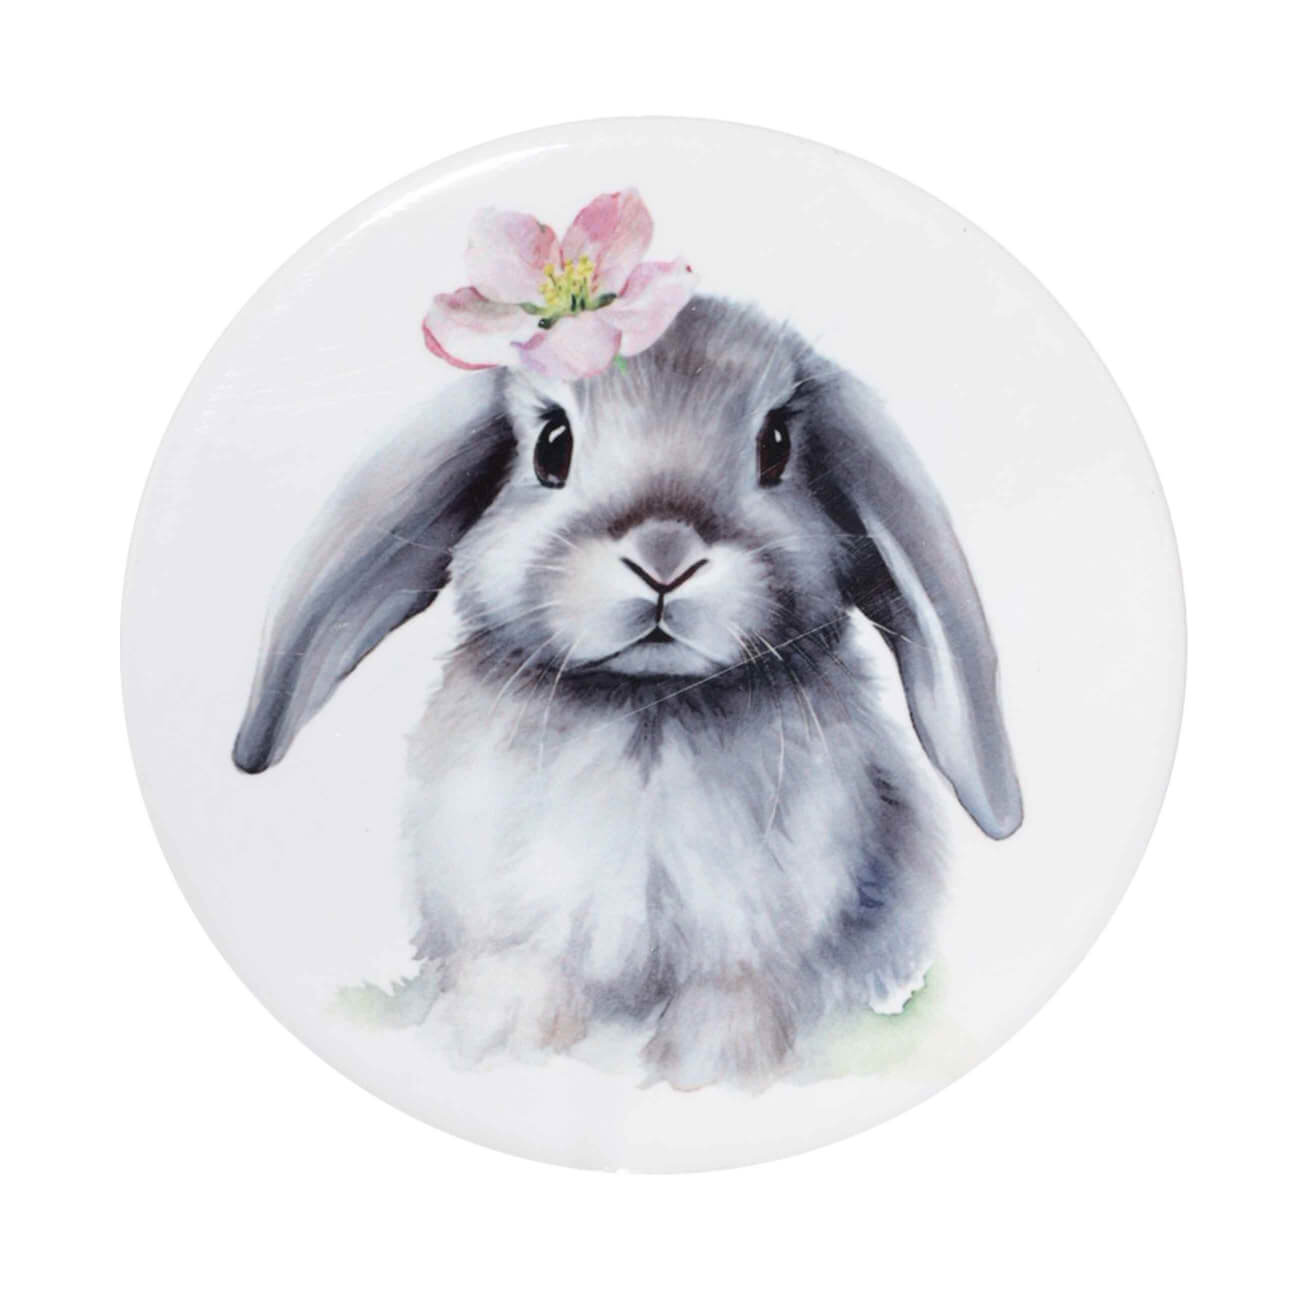 Подставка под кружку, 11 см, керамика/пробка, круглая, белая, Кролик с цветком, Pure Easter салфетка под приборы 30x45 см полиэстер прямоугольная белая кролики pure easter